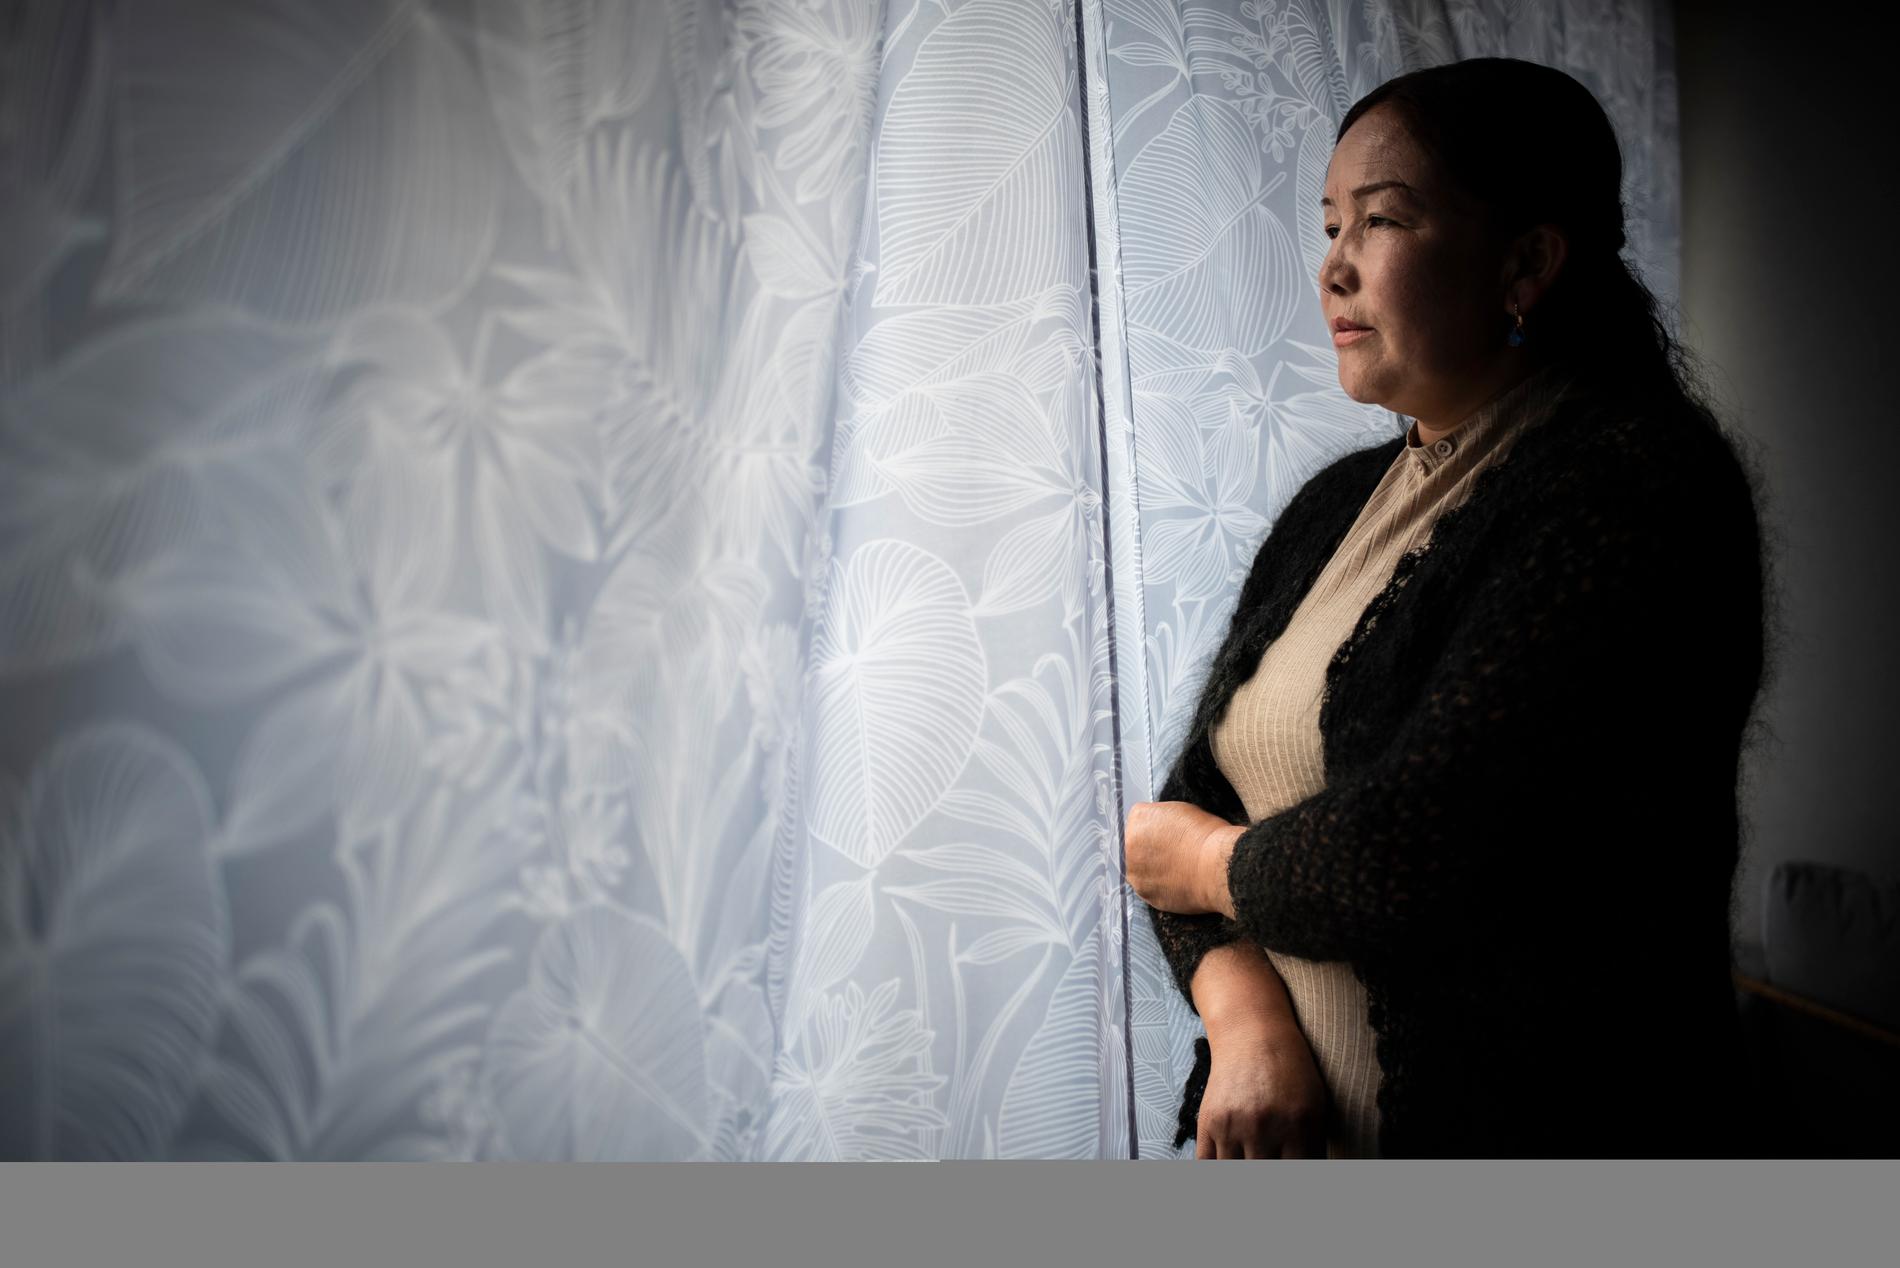 Sayragul Sauytbay berättar från sitt nya hem i södra Sverige om vad hon var med om när hon tvingades arbeta i ett av de läger Xinjiangprovinsen som Kina kallar utbildningscenter men som människorättsorganisationer benämner omskolningsläger.